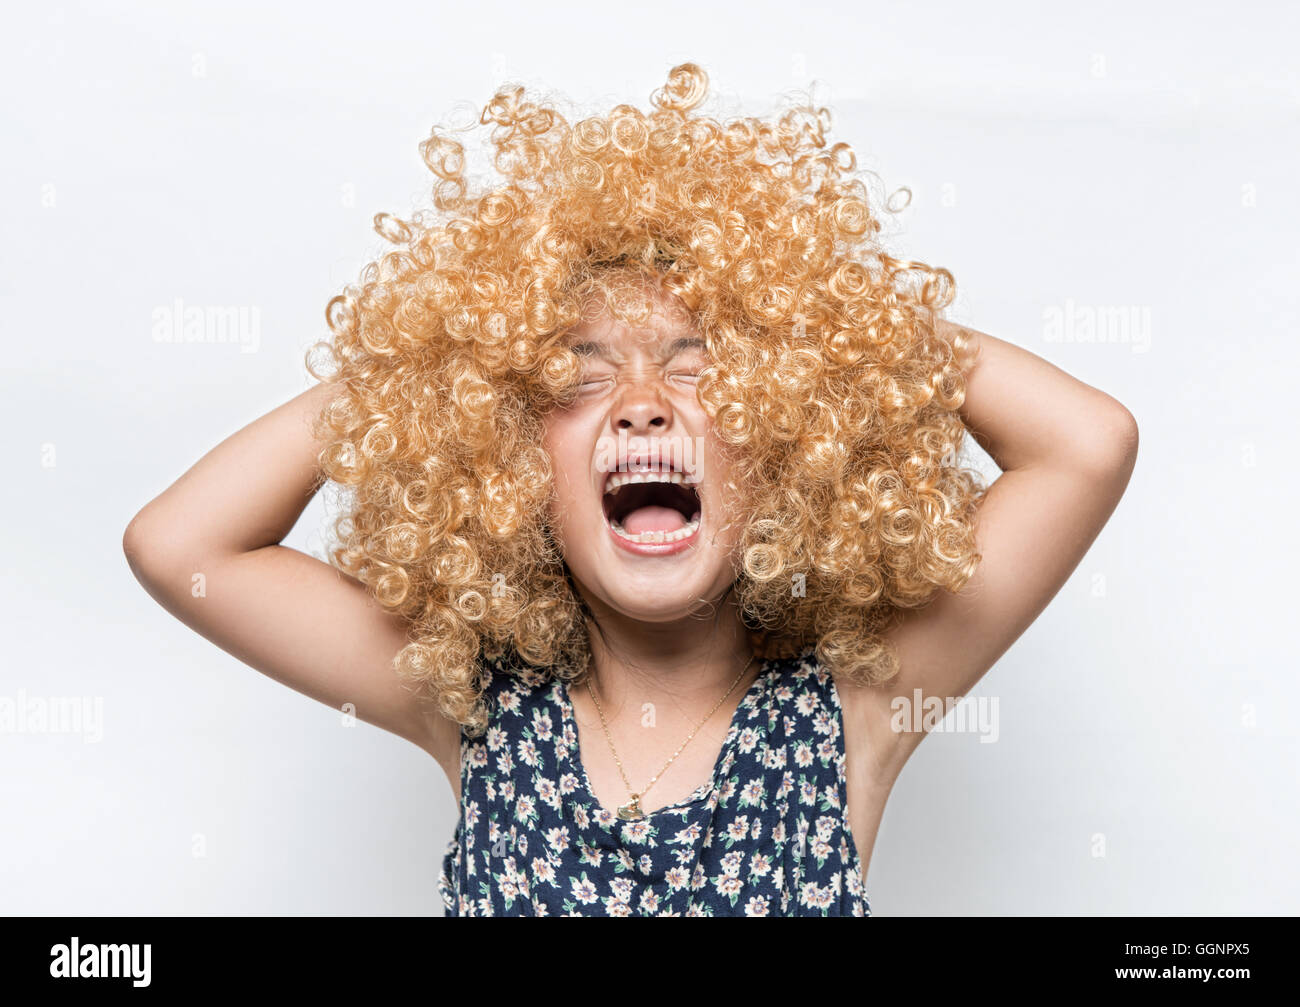 Llevaba una peluca rubia y divertida expresión facial muchacha asiática Foto de stock